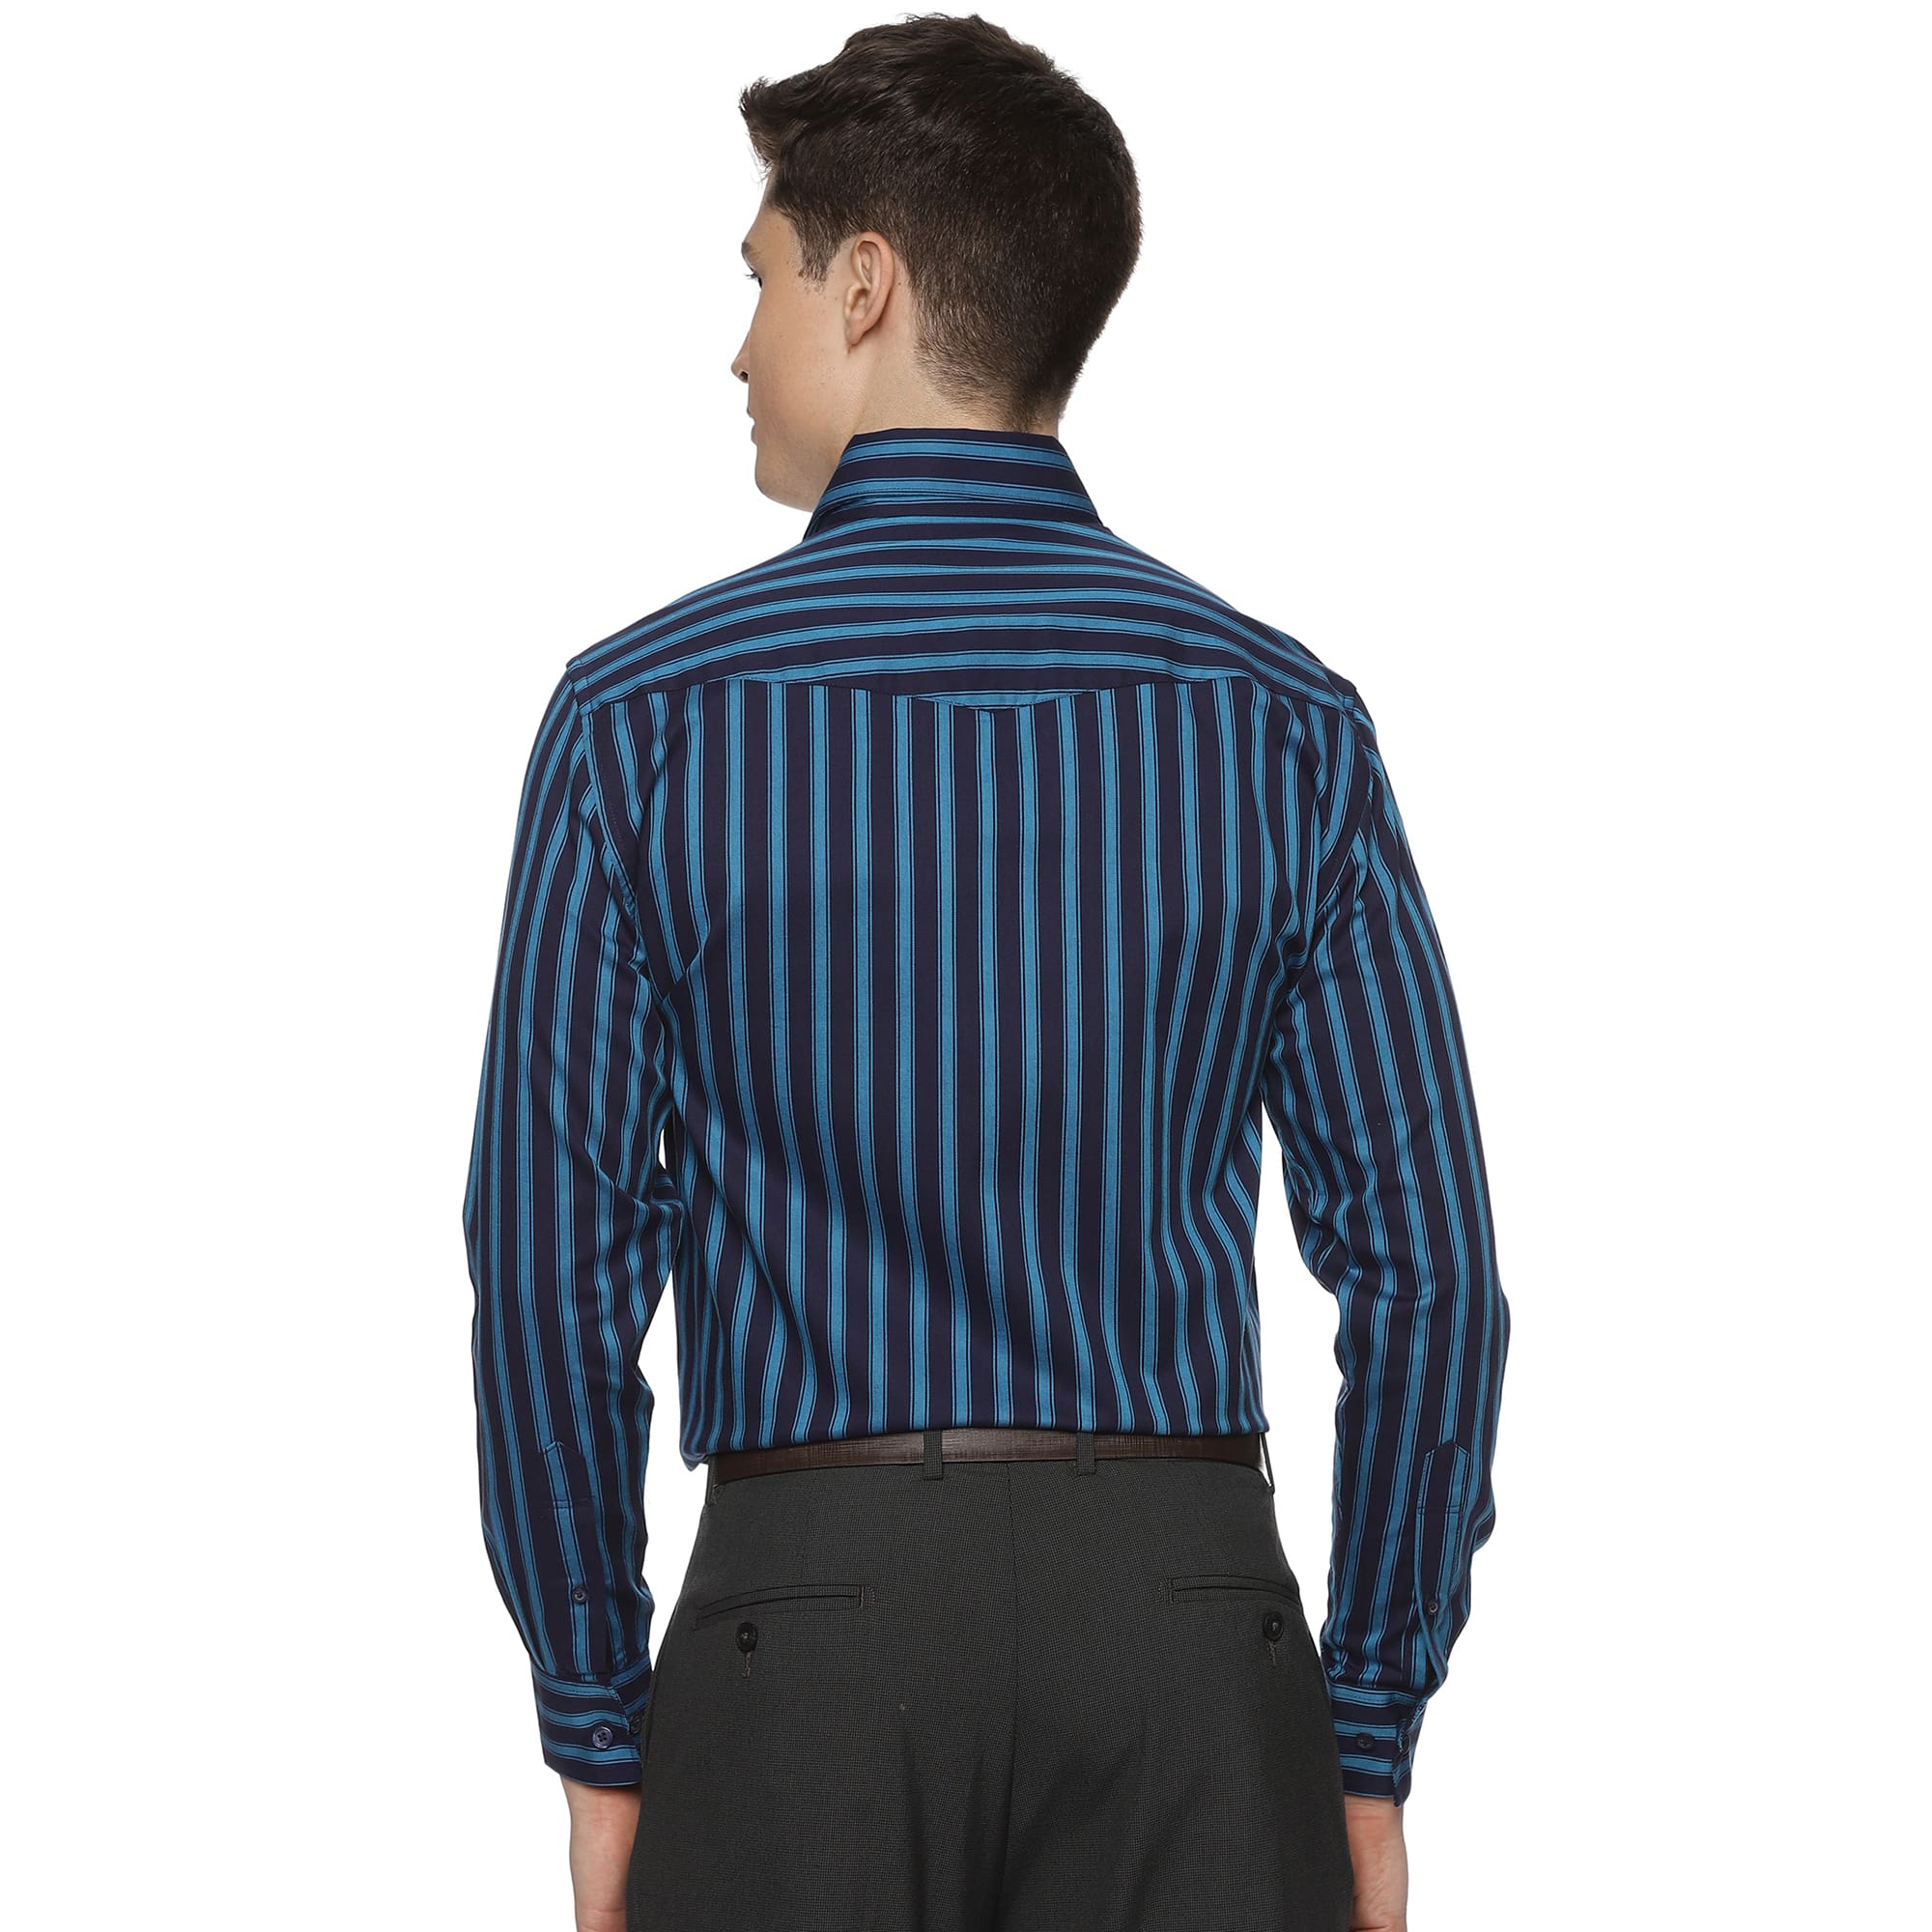 Rhythm Blue Stripe Shirt In Navy Blue - The Formal Club